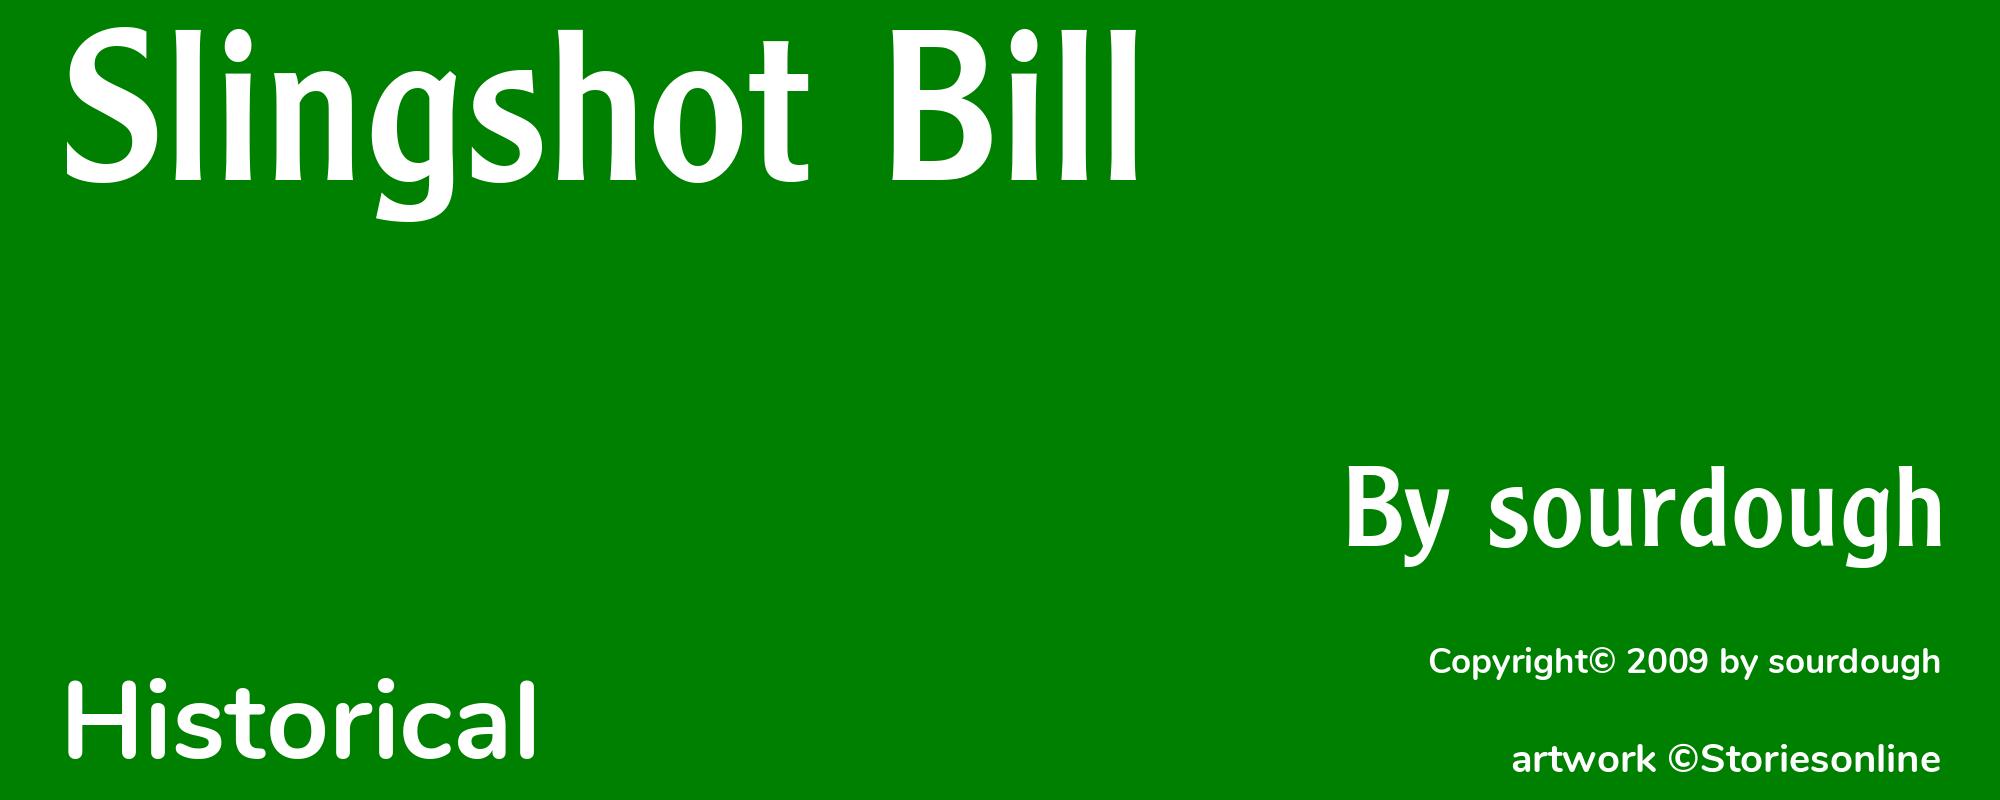 Slingshot Bill - Cover